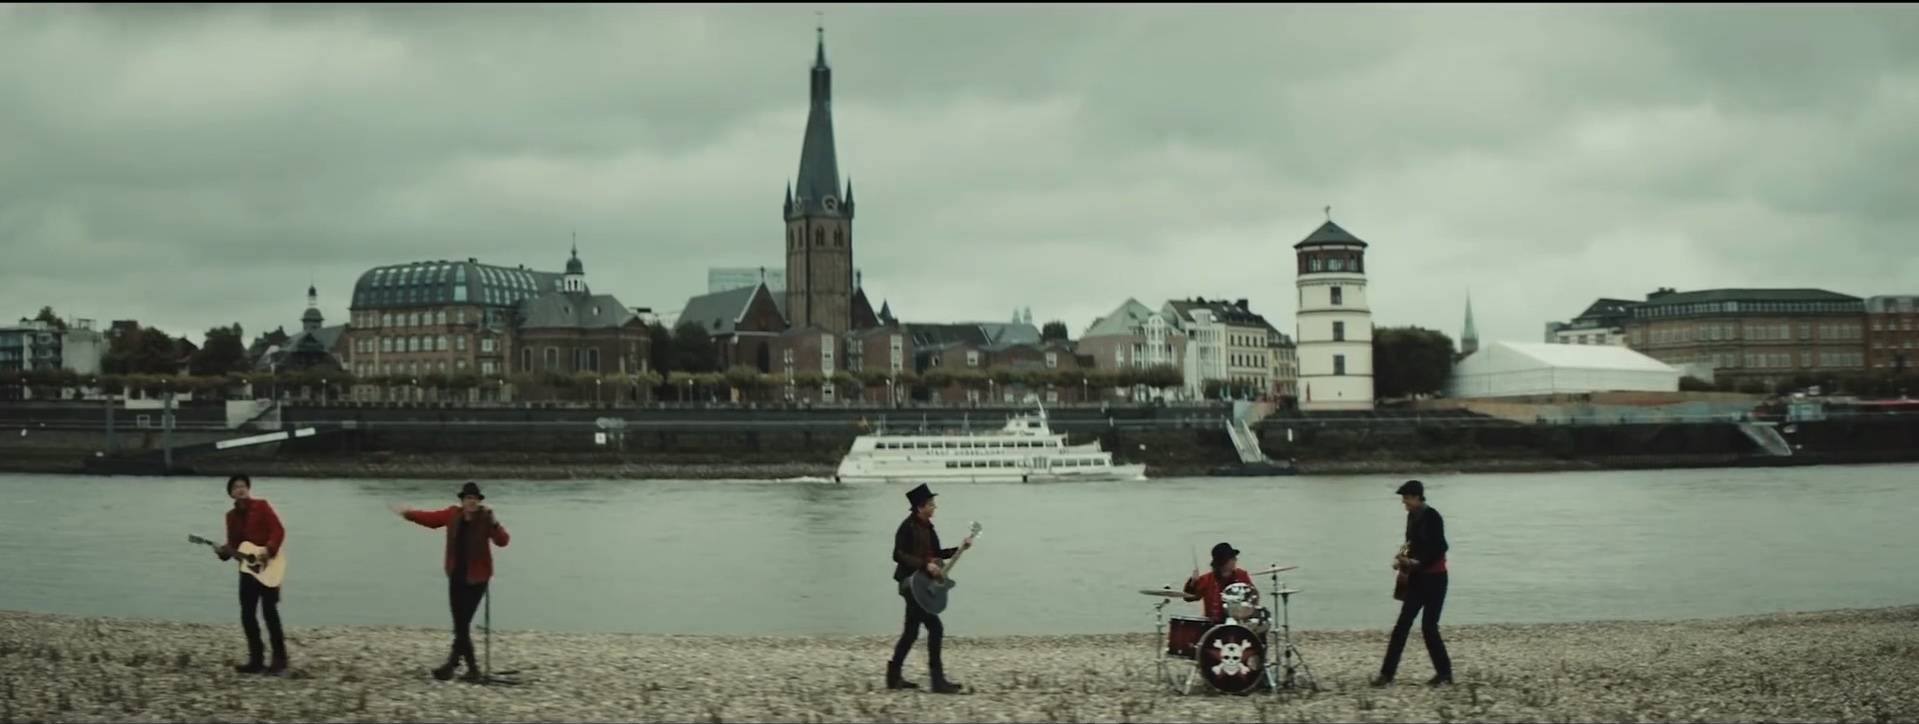 Neues Hosen-Lied als Warteschleifenmusik bei Düsseldorf Tourismus